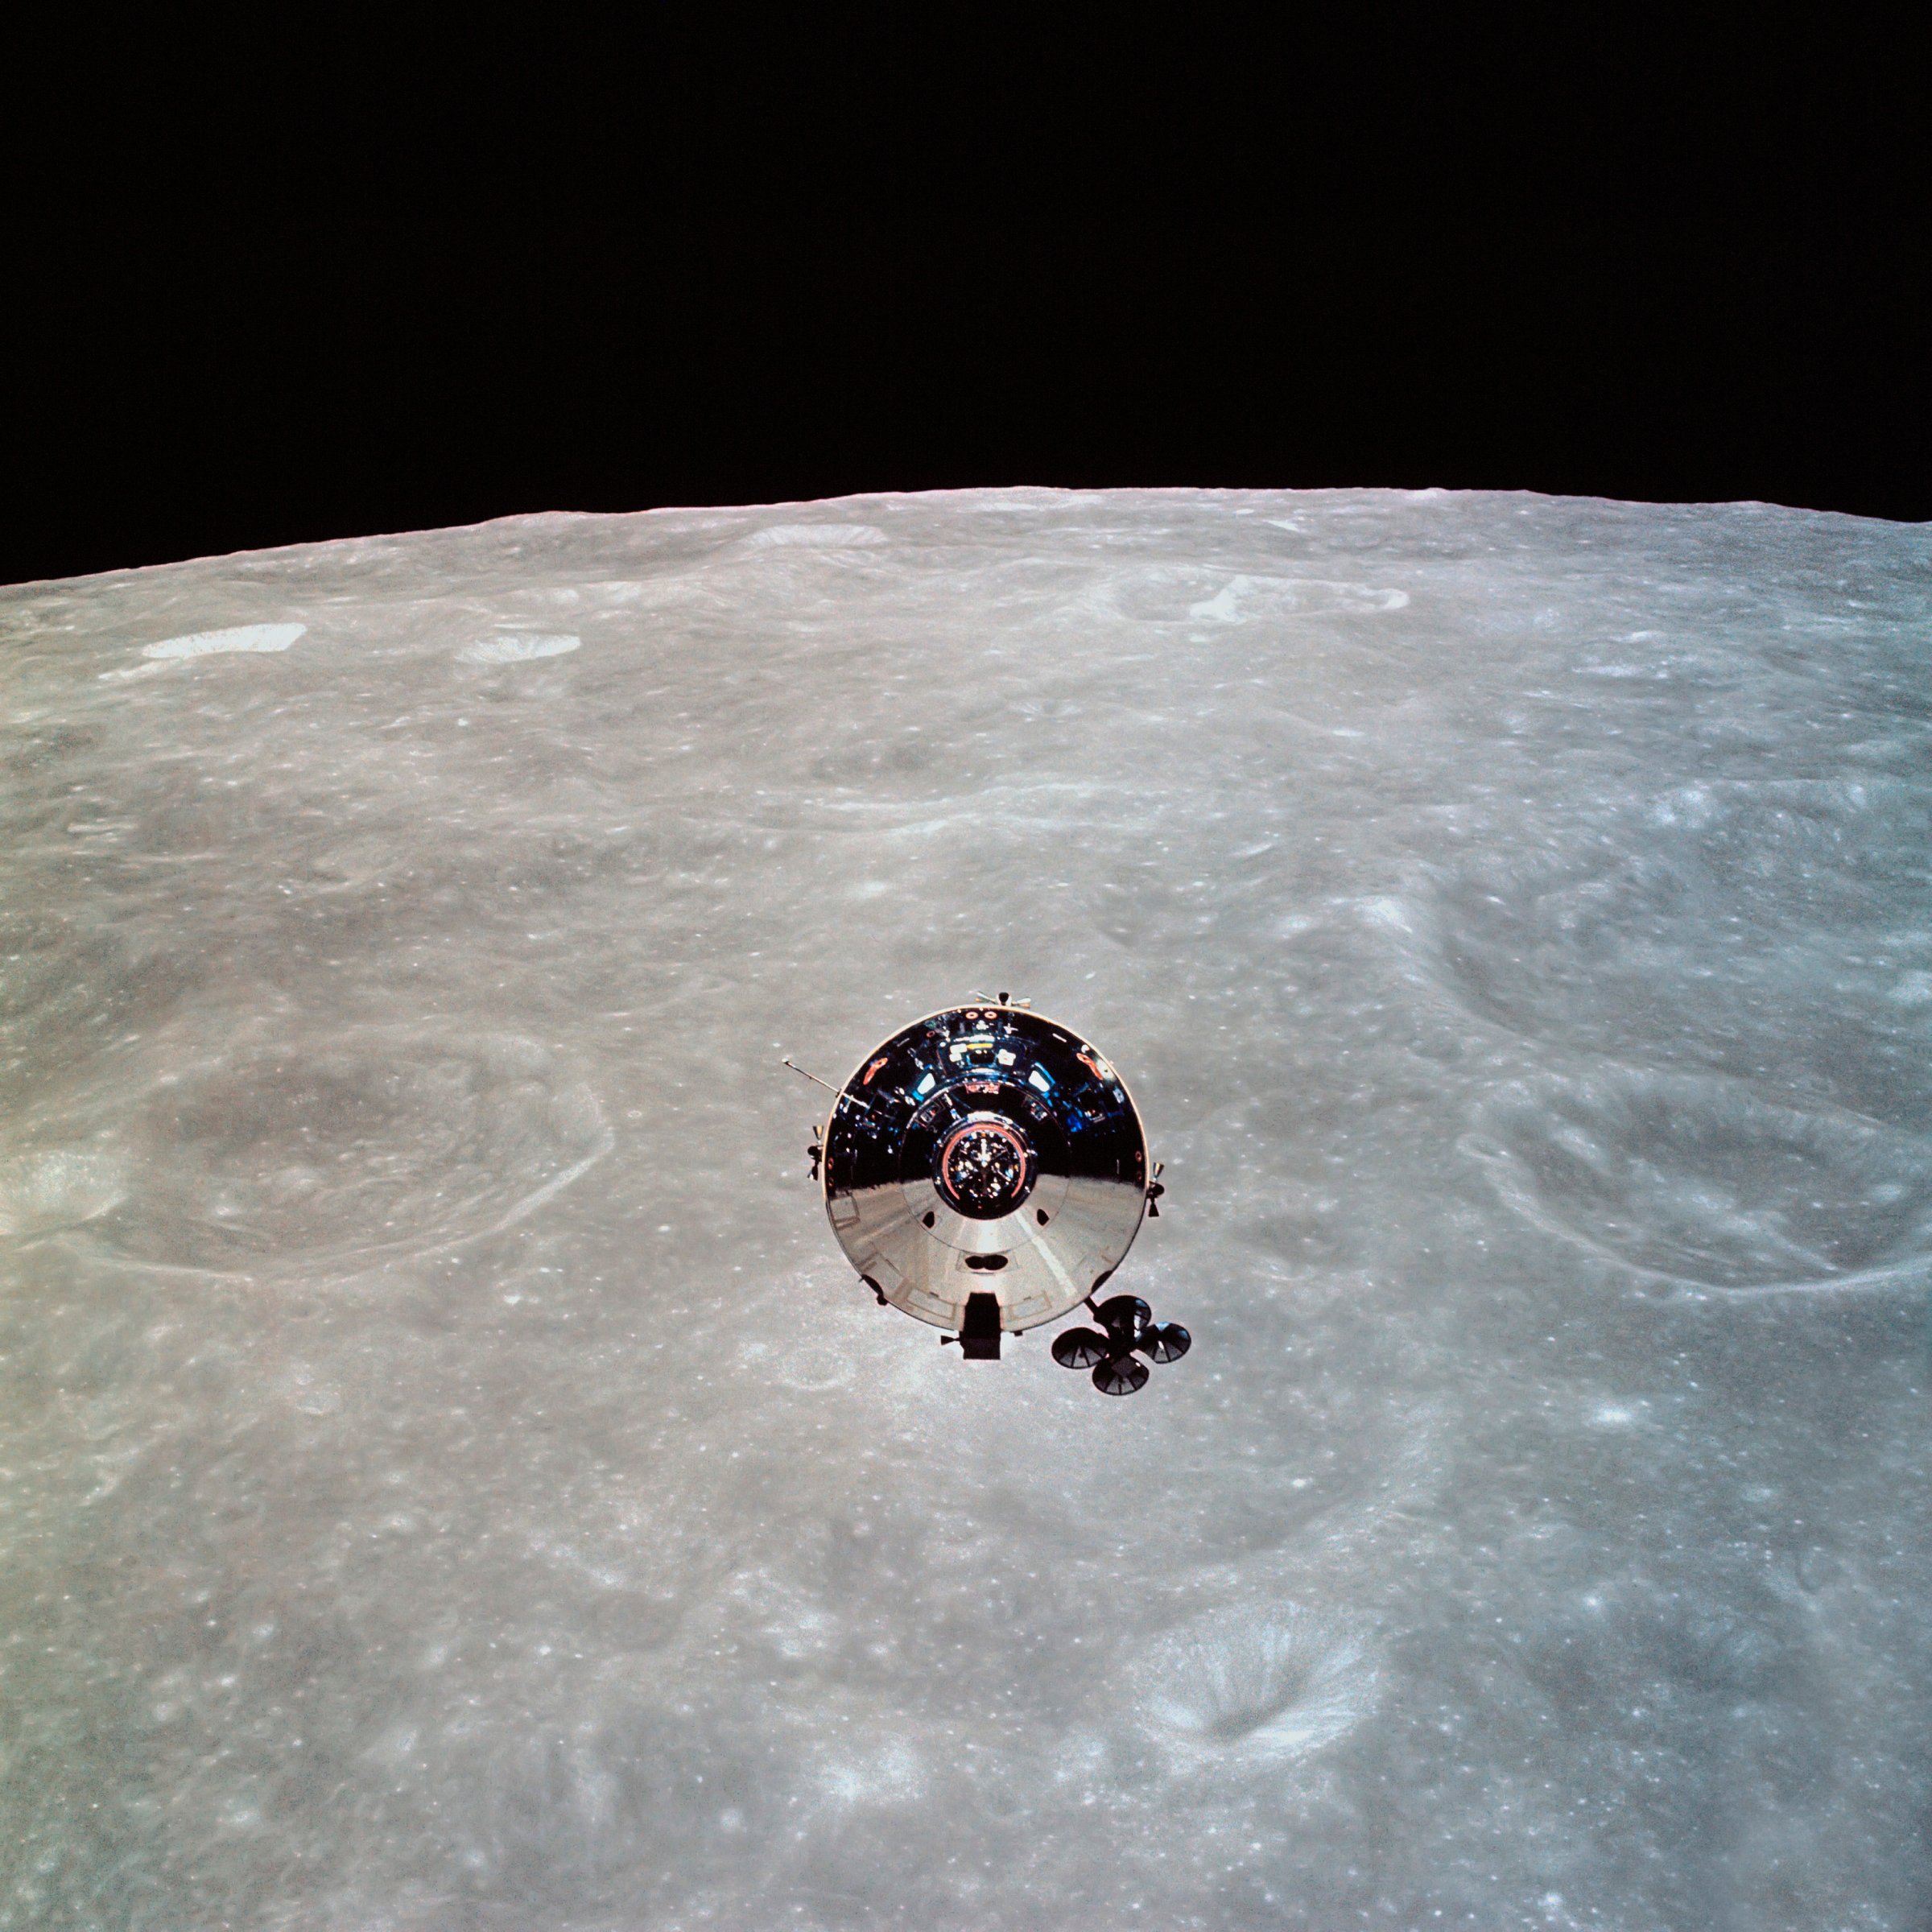 The Apollo 10 Command and Service Modules in lunar orbit.